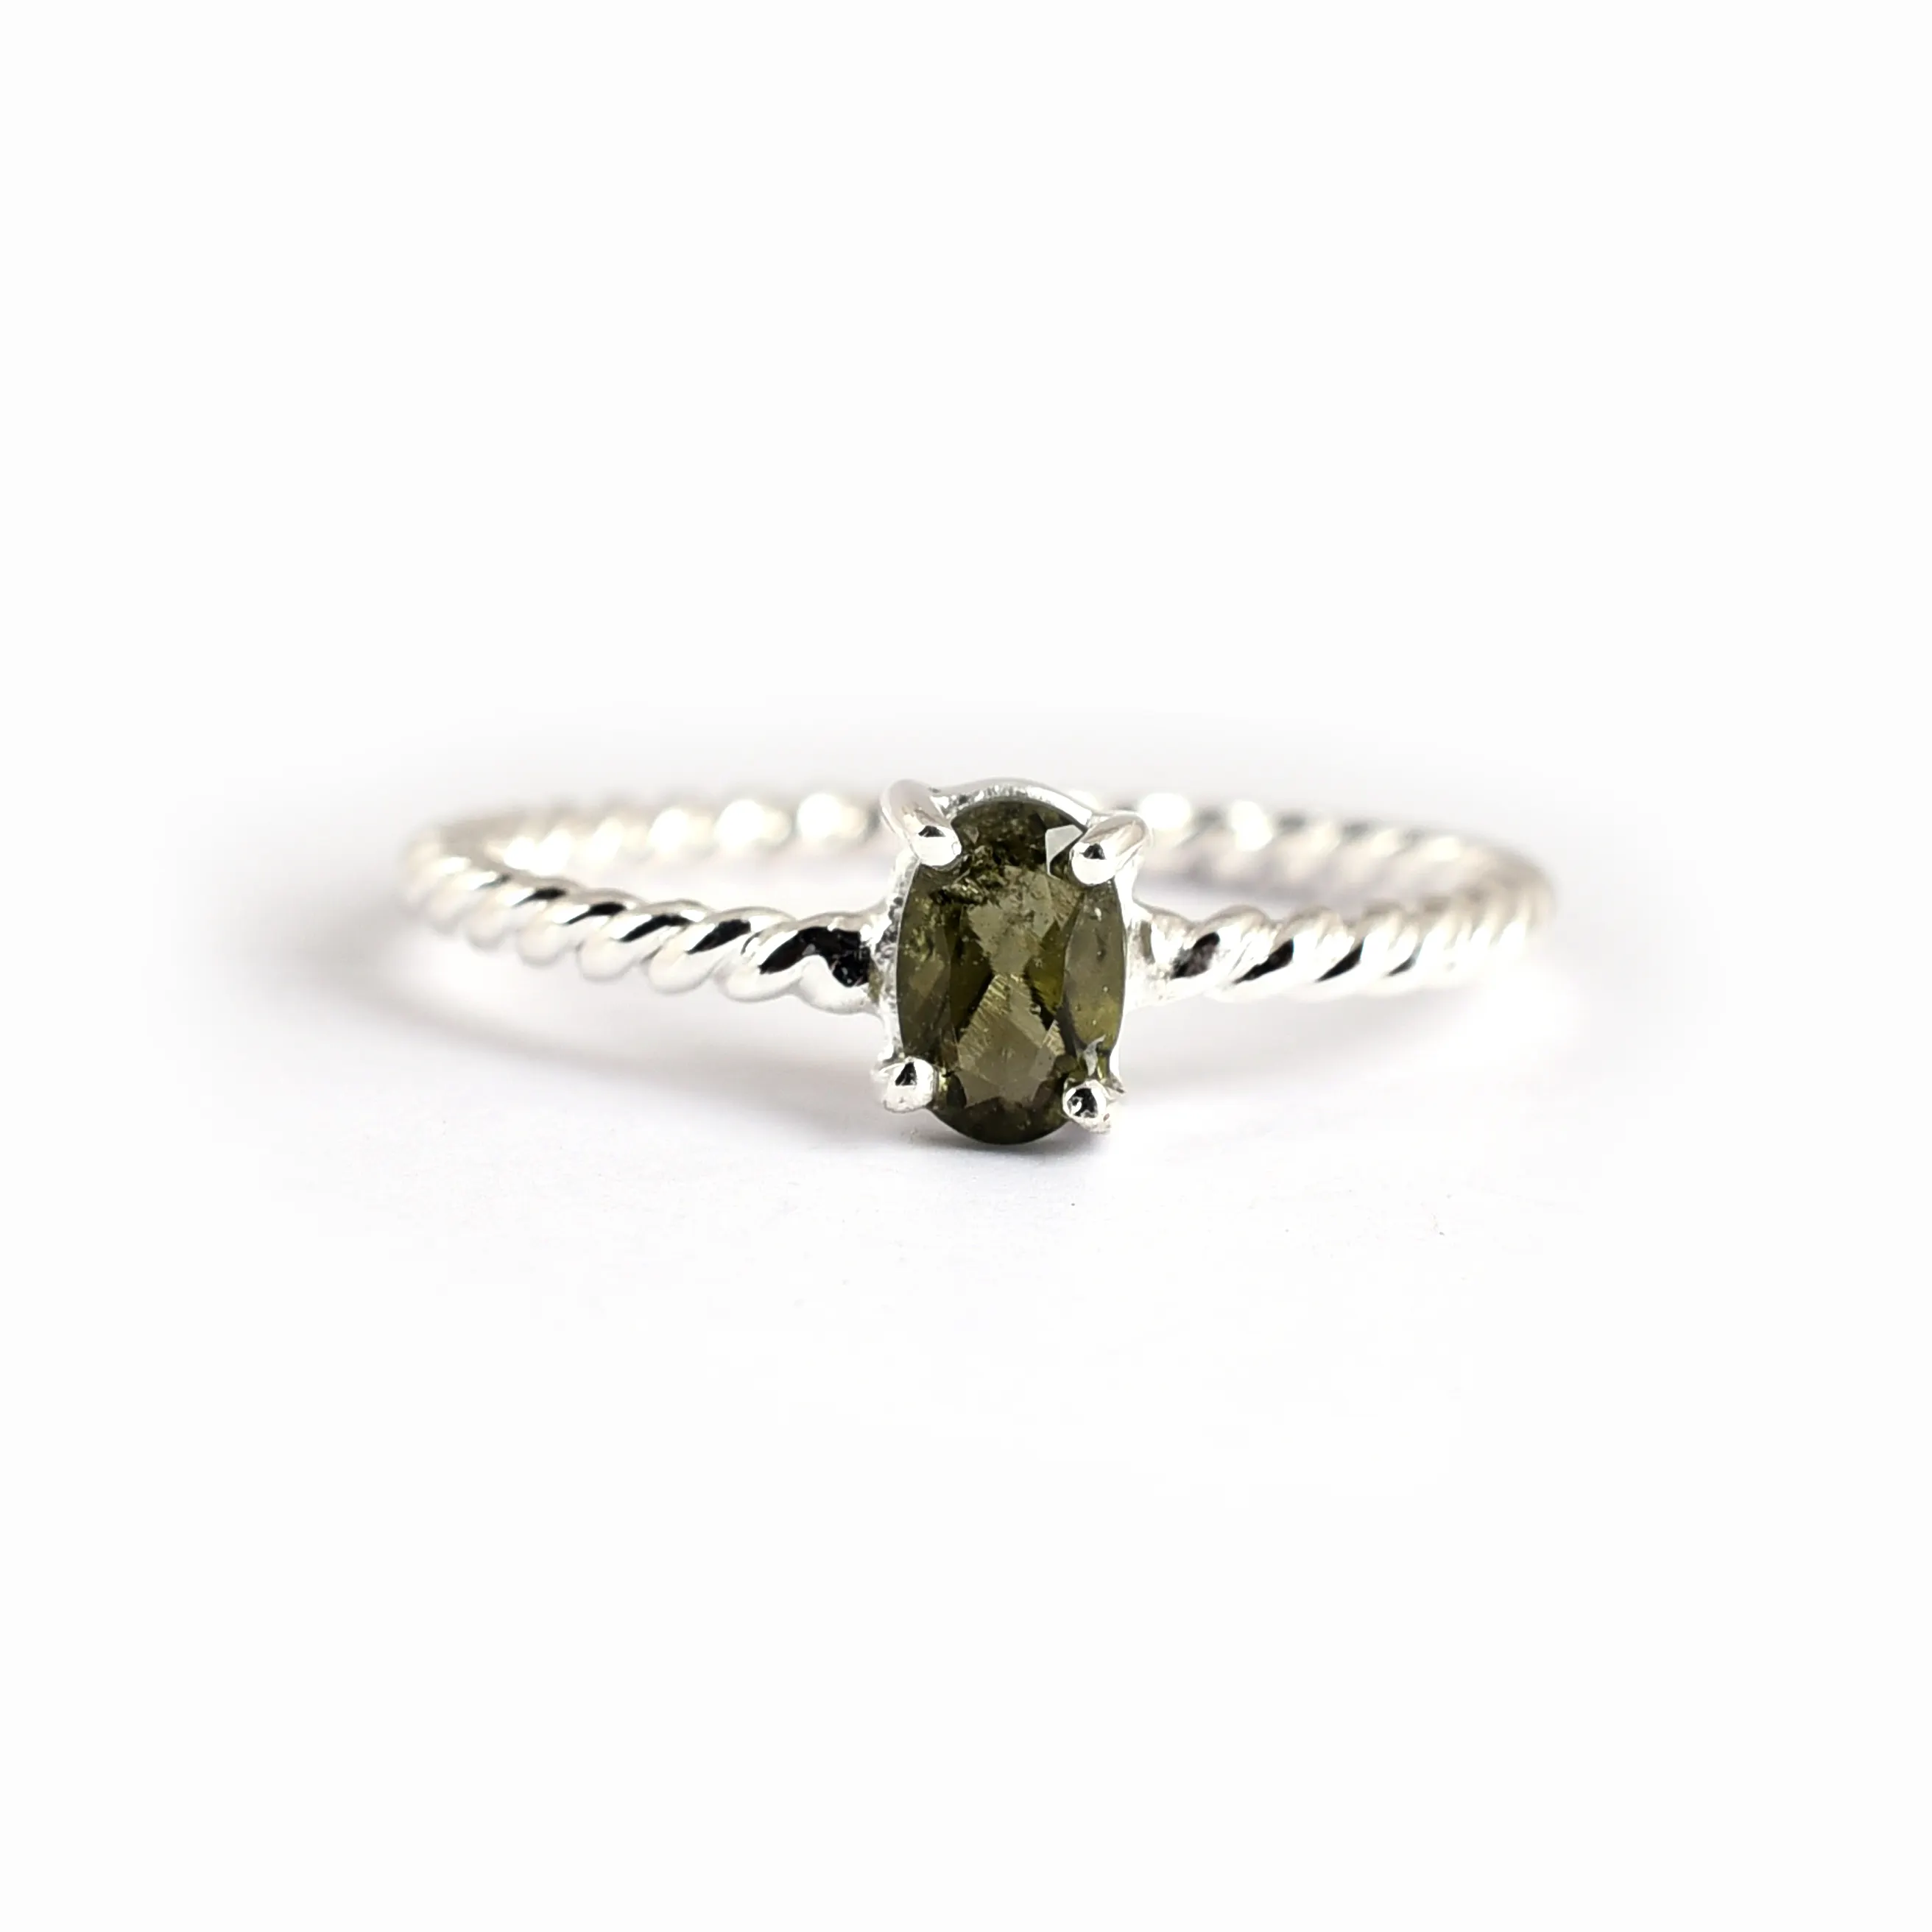 Moldavite रत्न की अंगूठी निचले स्तर के दुर्लभ रत्न प्रामाणिक Moldavite हस्तनिर्मित डिजाइन अंगूठी 925 स्टर्लिंग चांदी